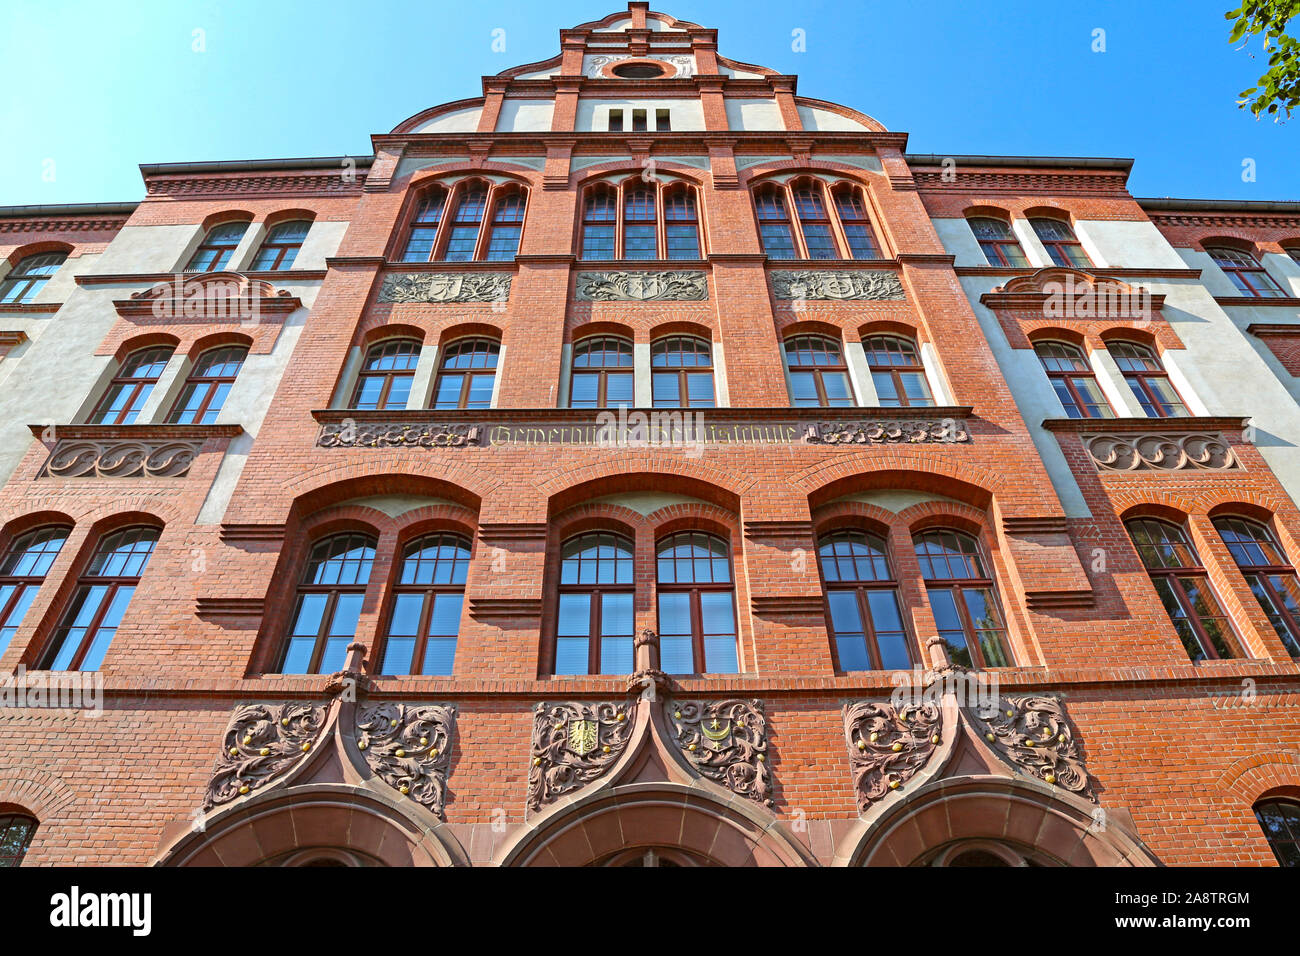 Halle (Saale), Germany-August 24, 2019: Gewerbliche Berufliche Schule, typische Gebäude des deutschen Barock in der Altstadt Stockfoto